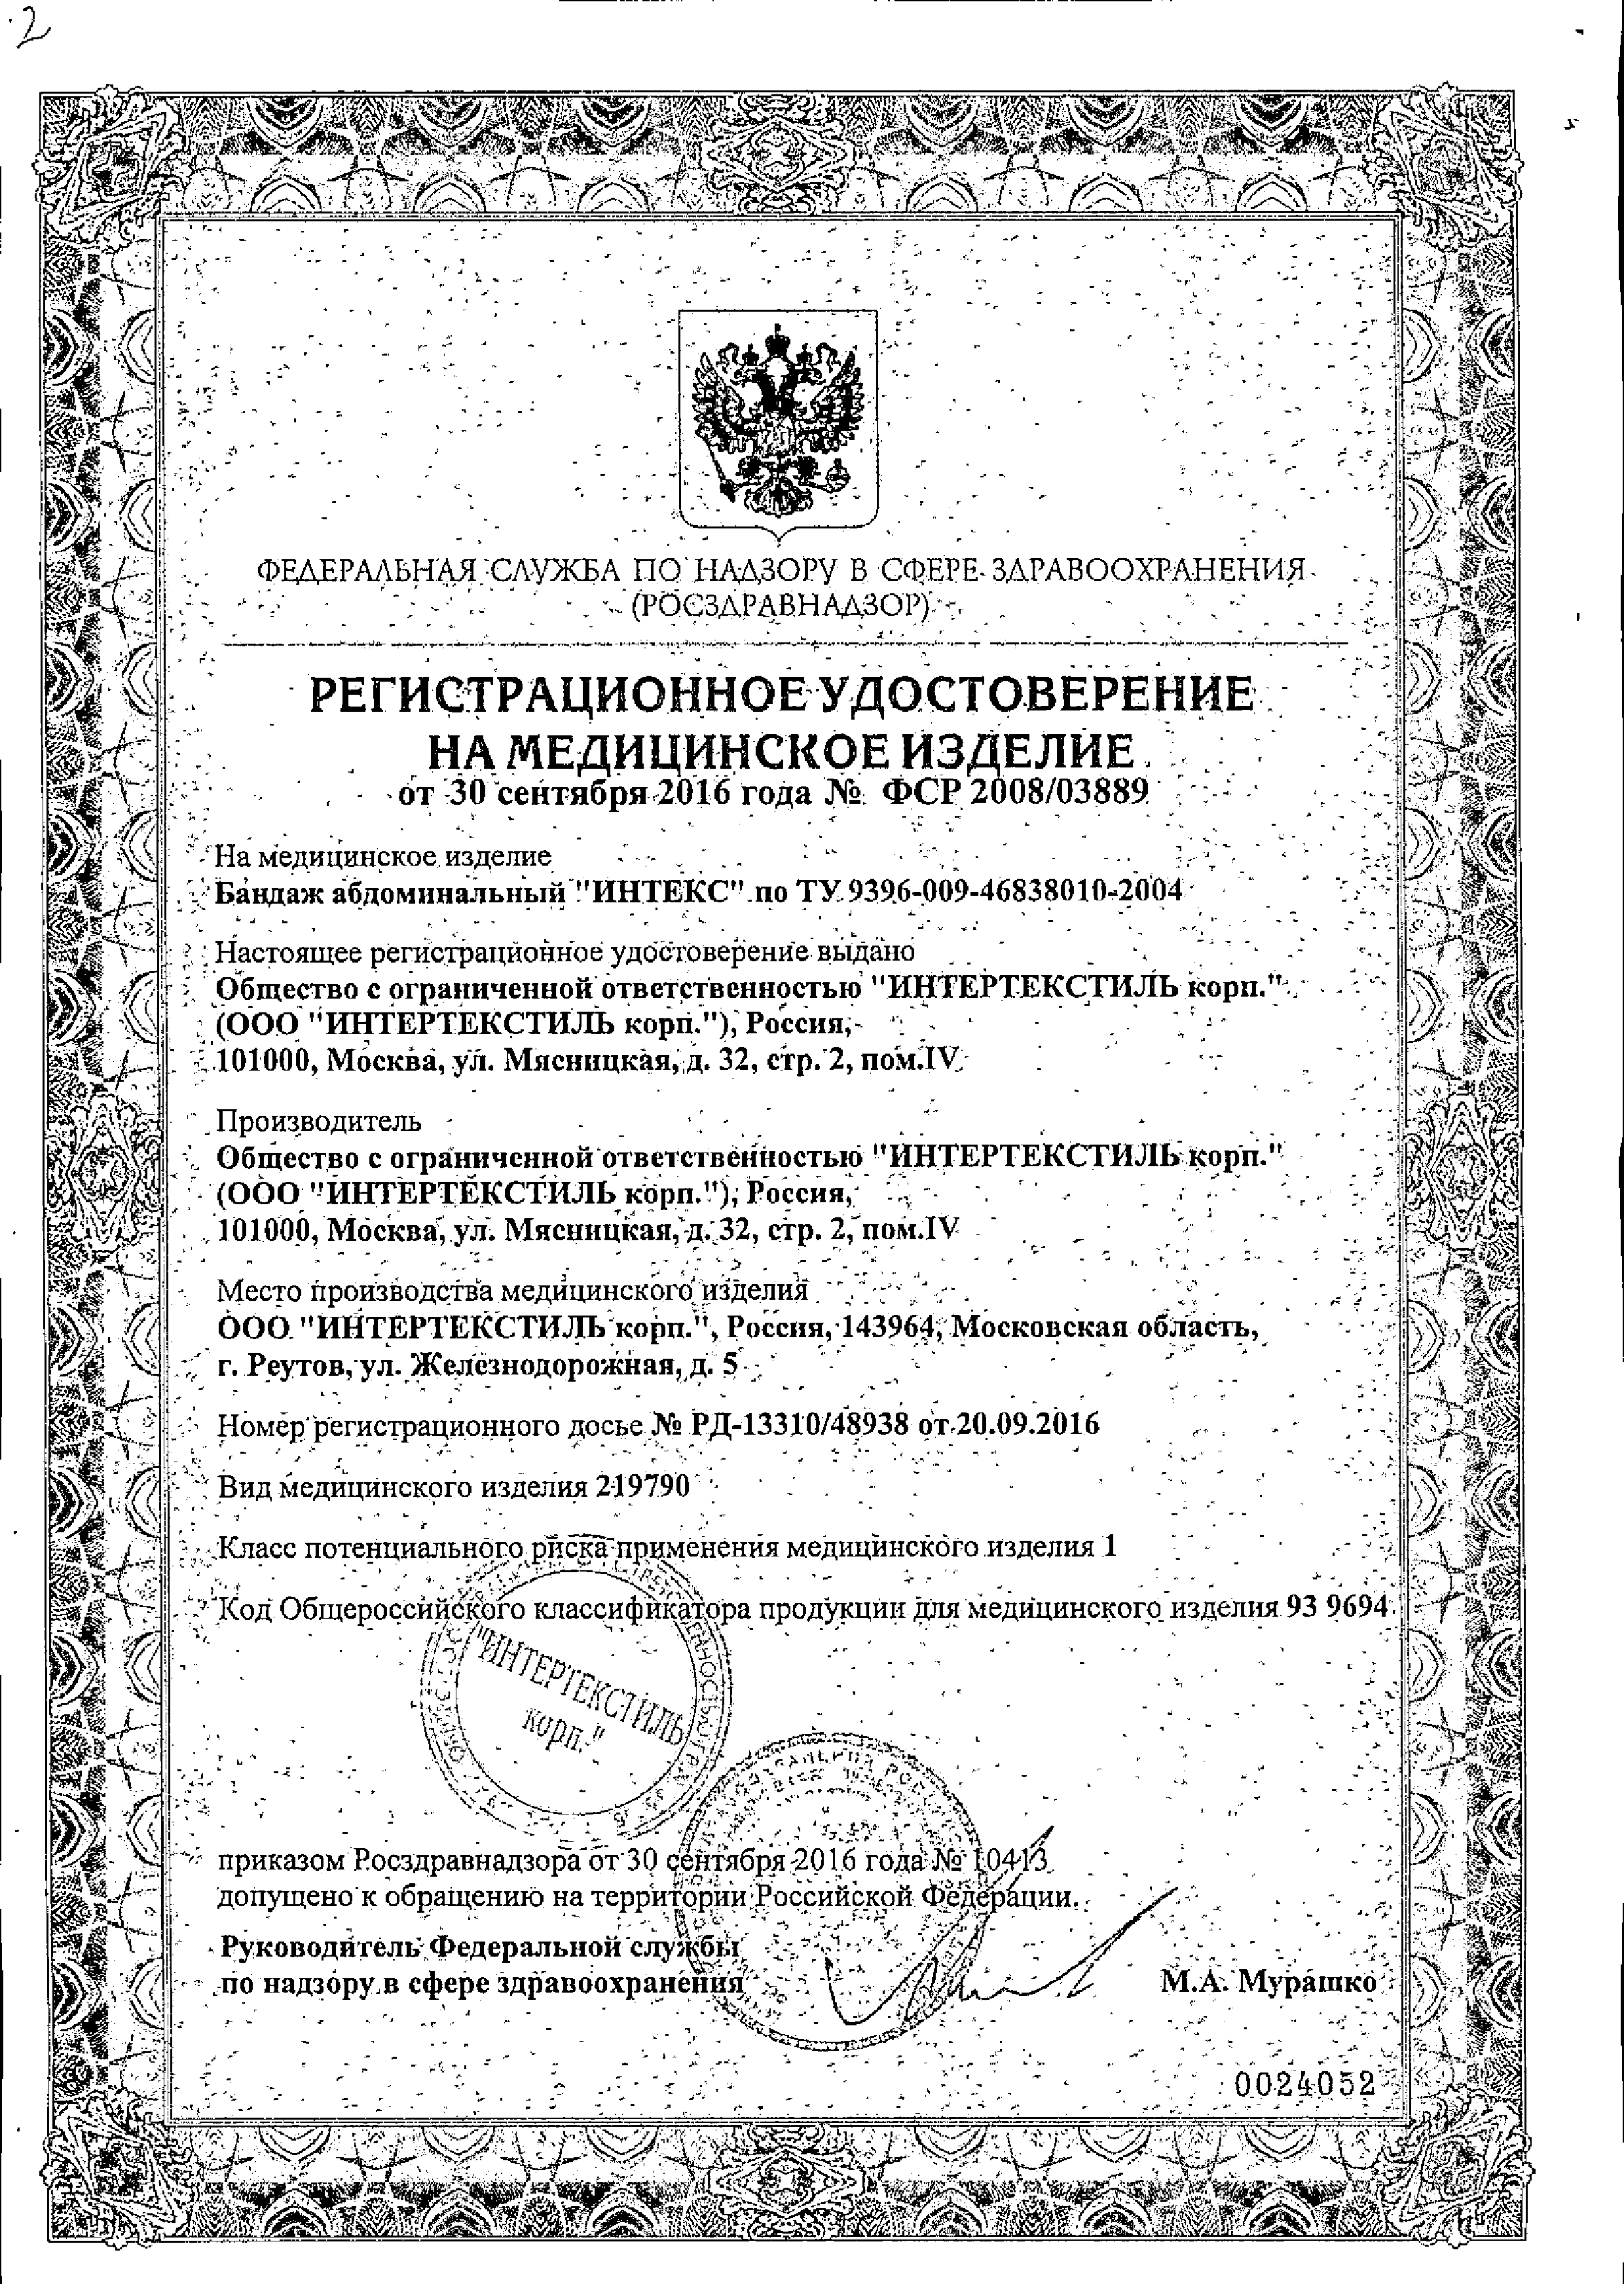 Бандаж абдоминальный послеоперационный сертификат